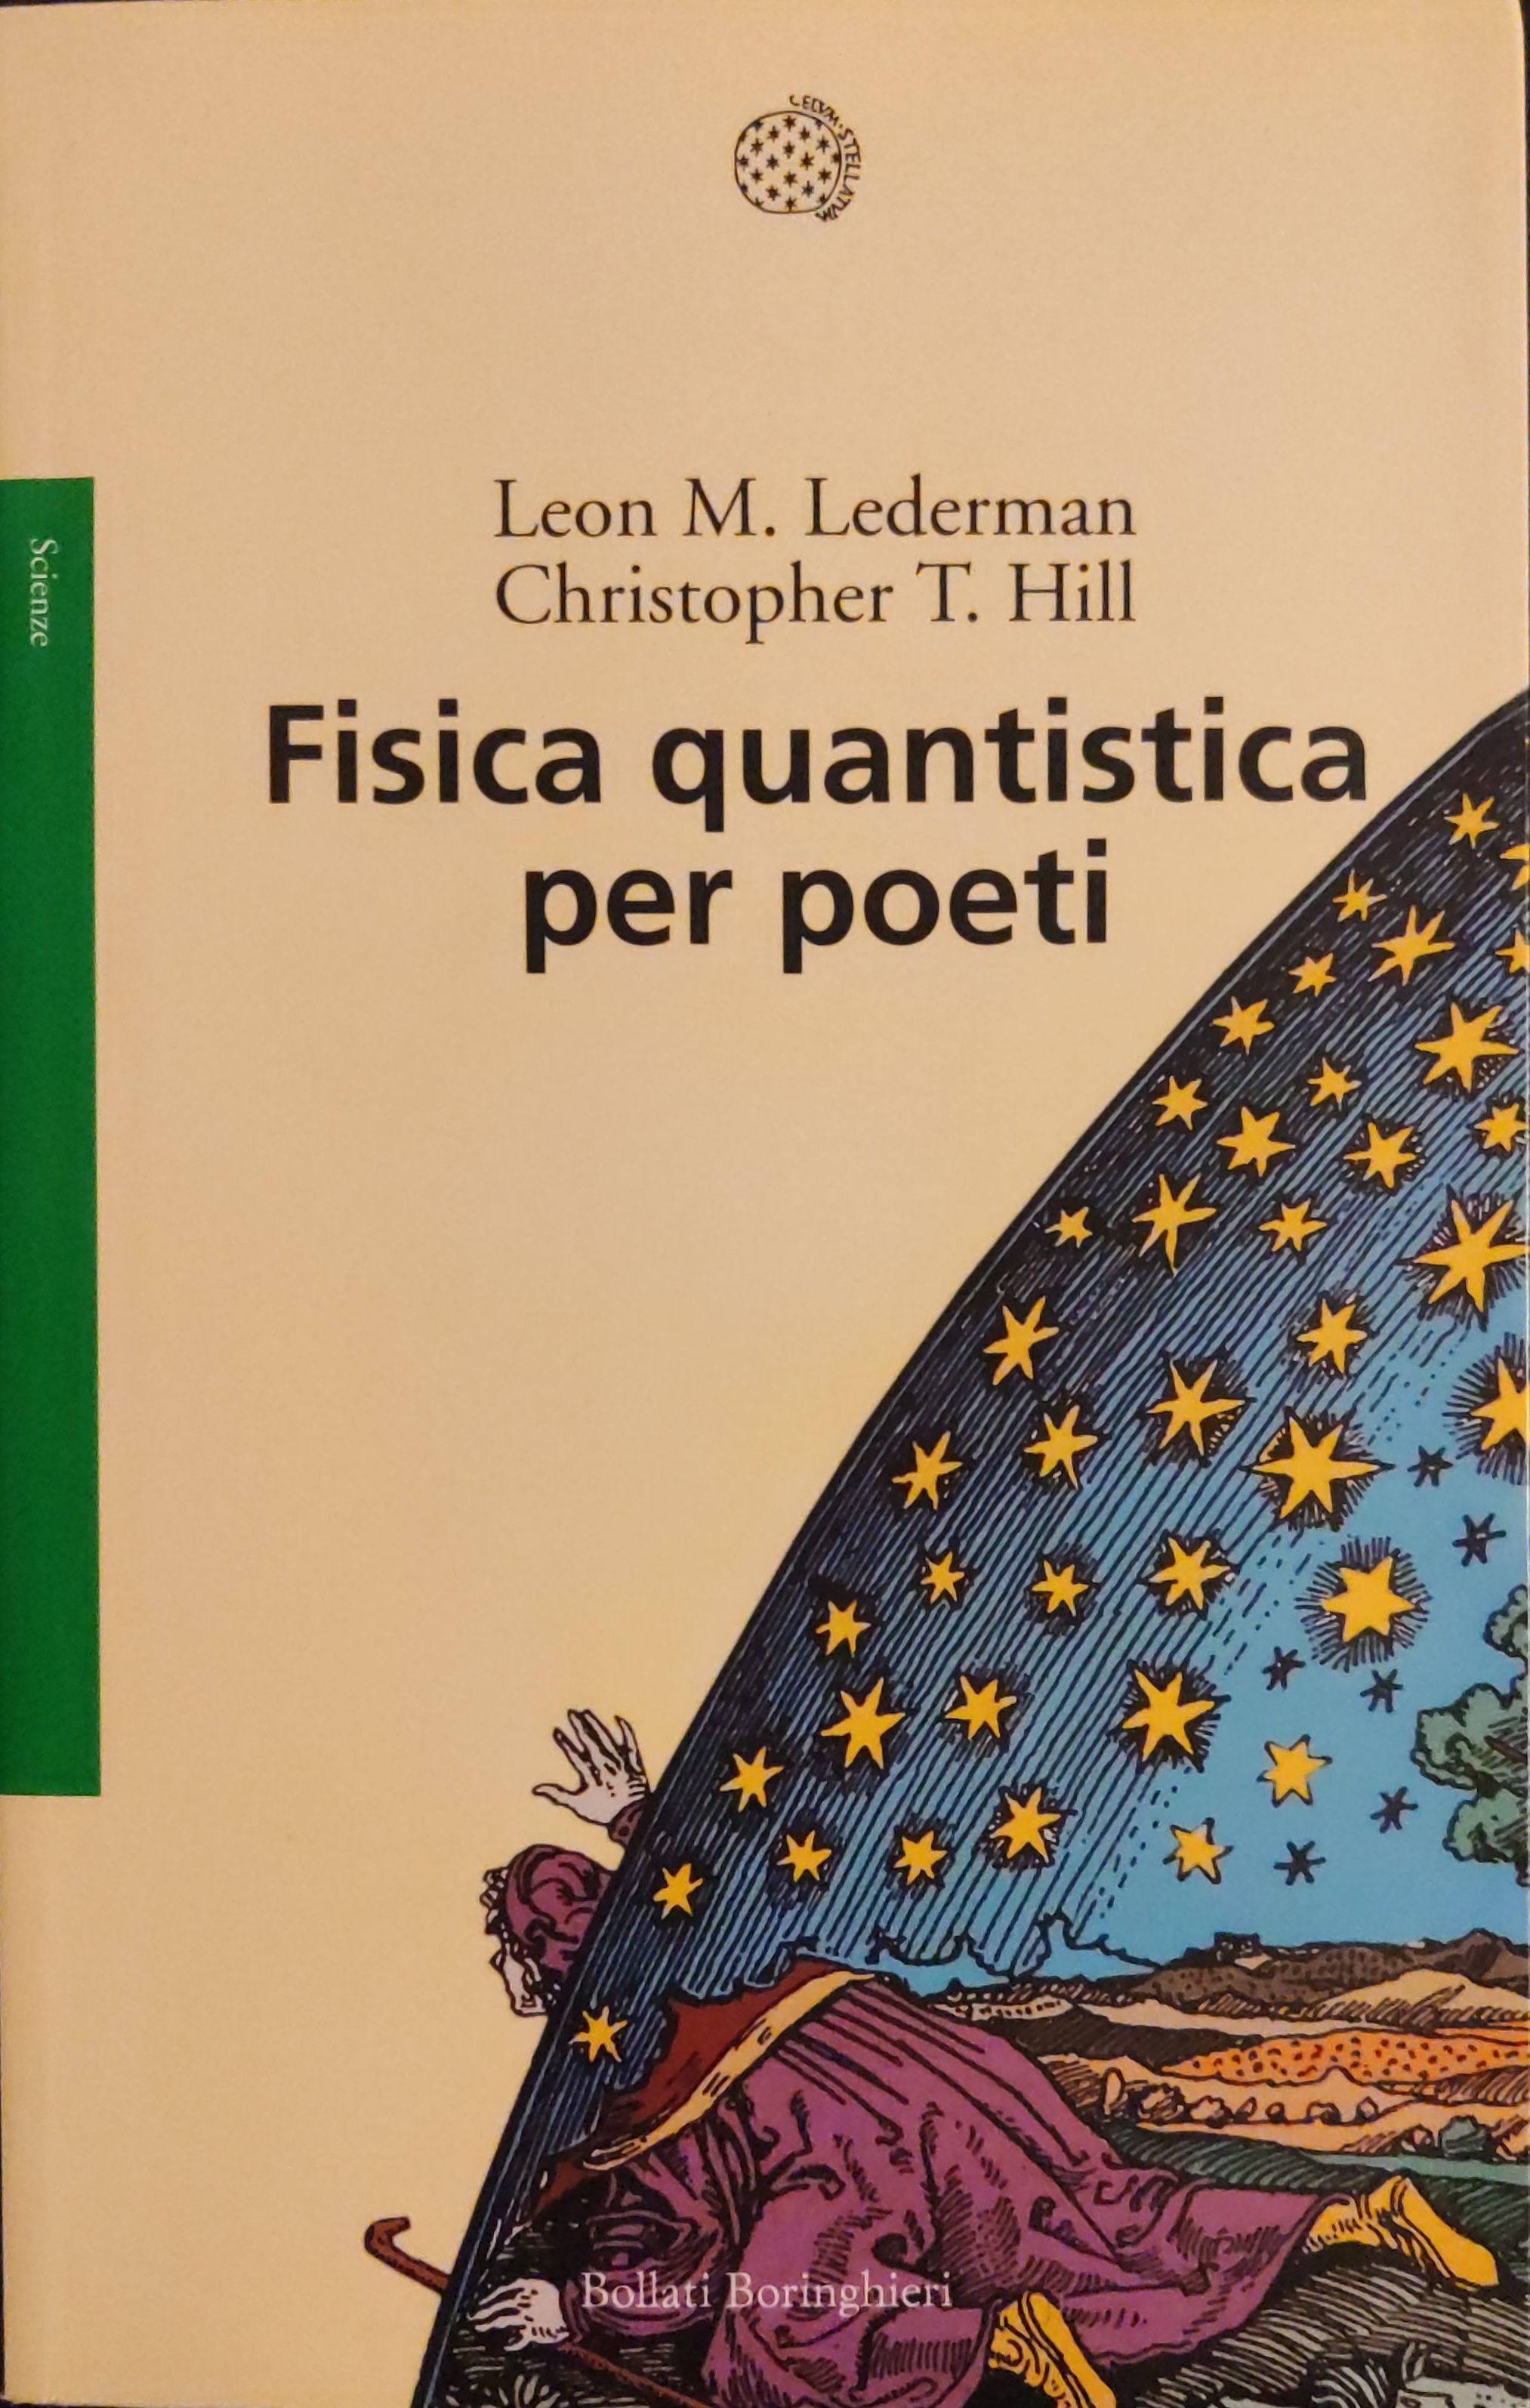 Leon Lederman, Christopher T. Hill, Luigi Civalleri: Fisica quantistica per poeti (Paperback, Italiano language, 2013, Bollati Boringhieri)